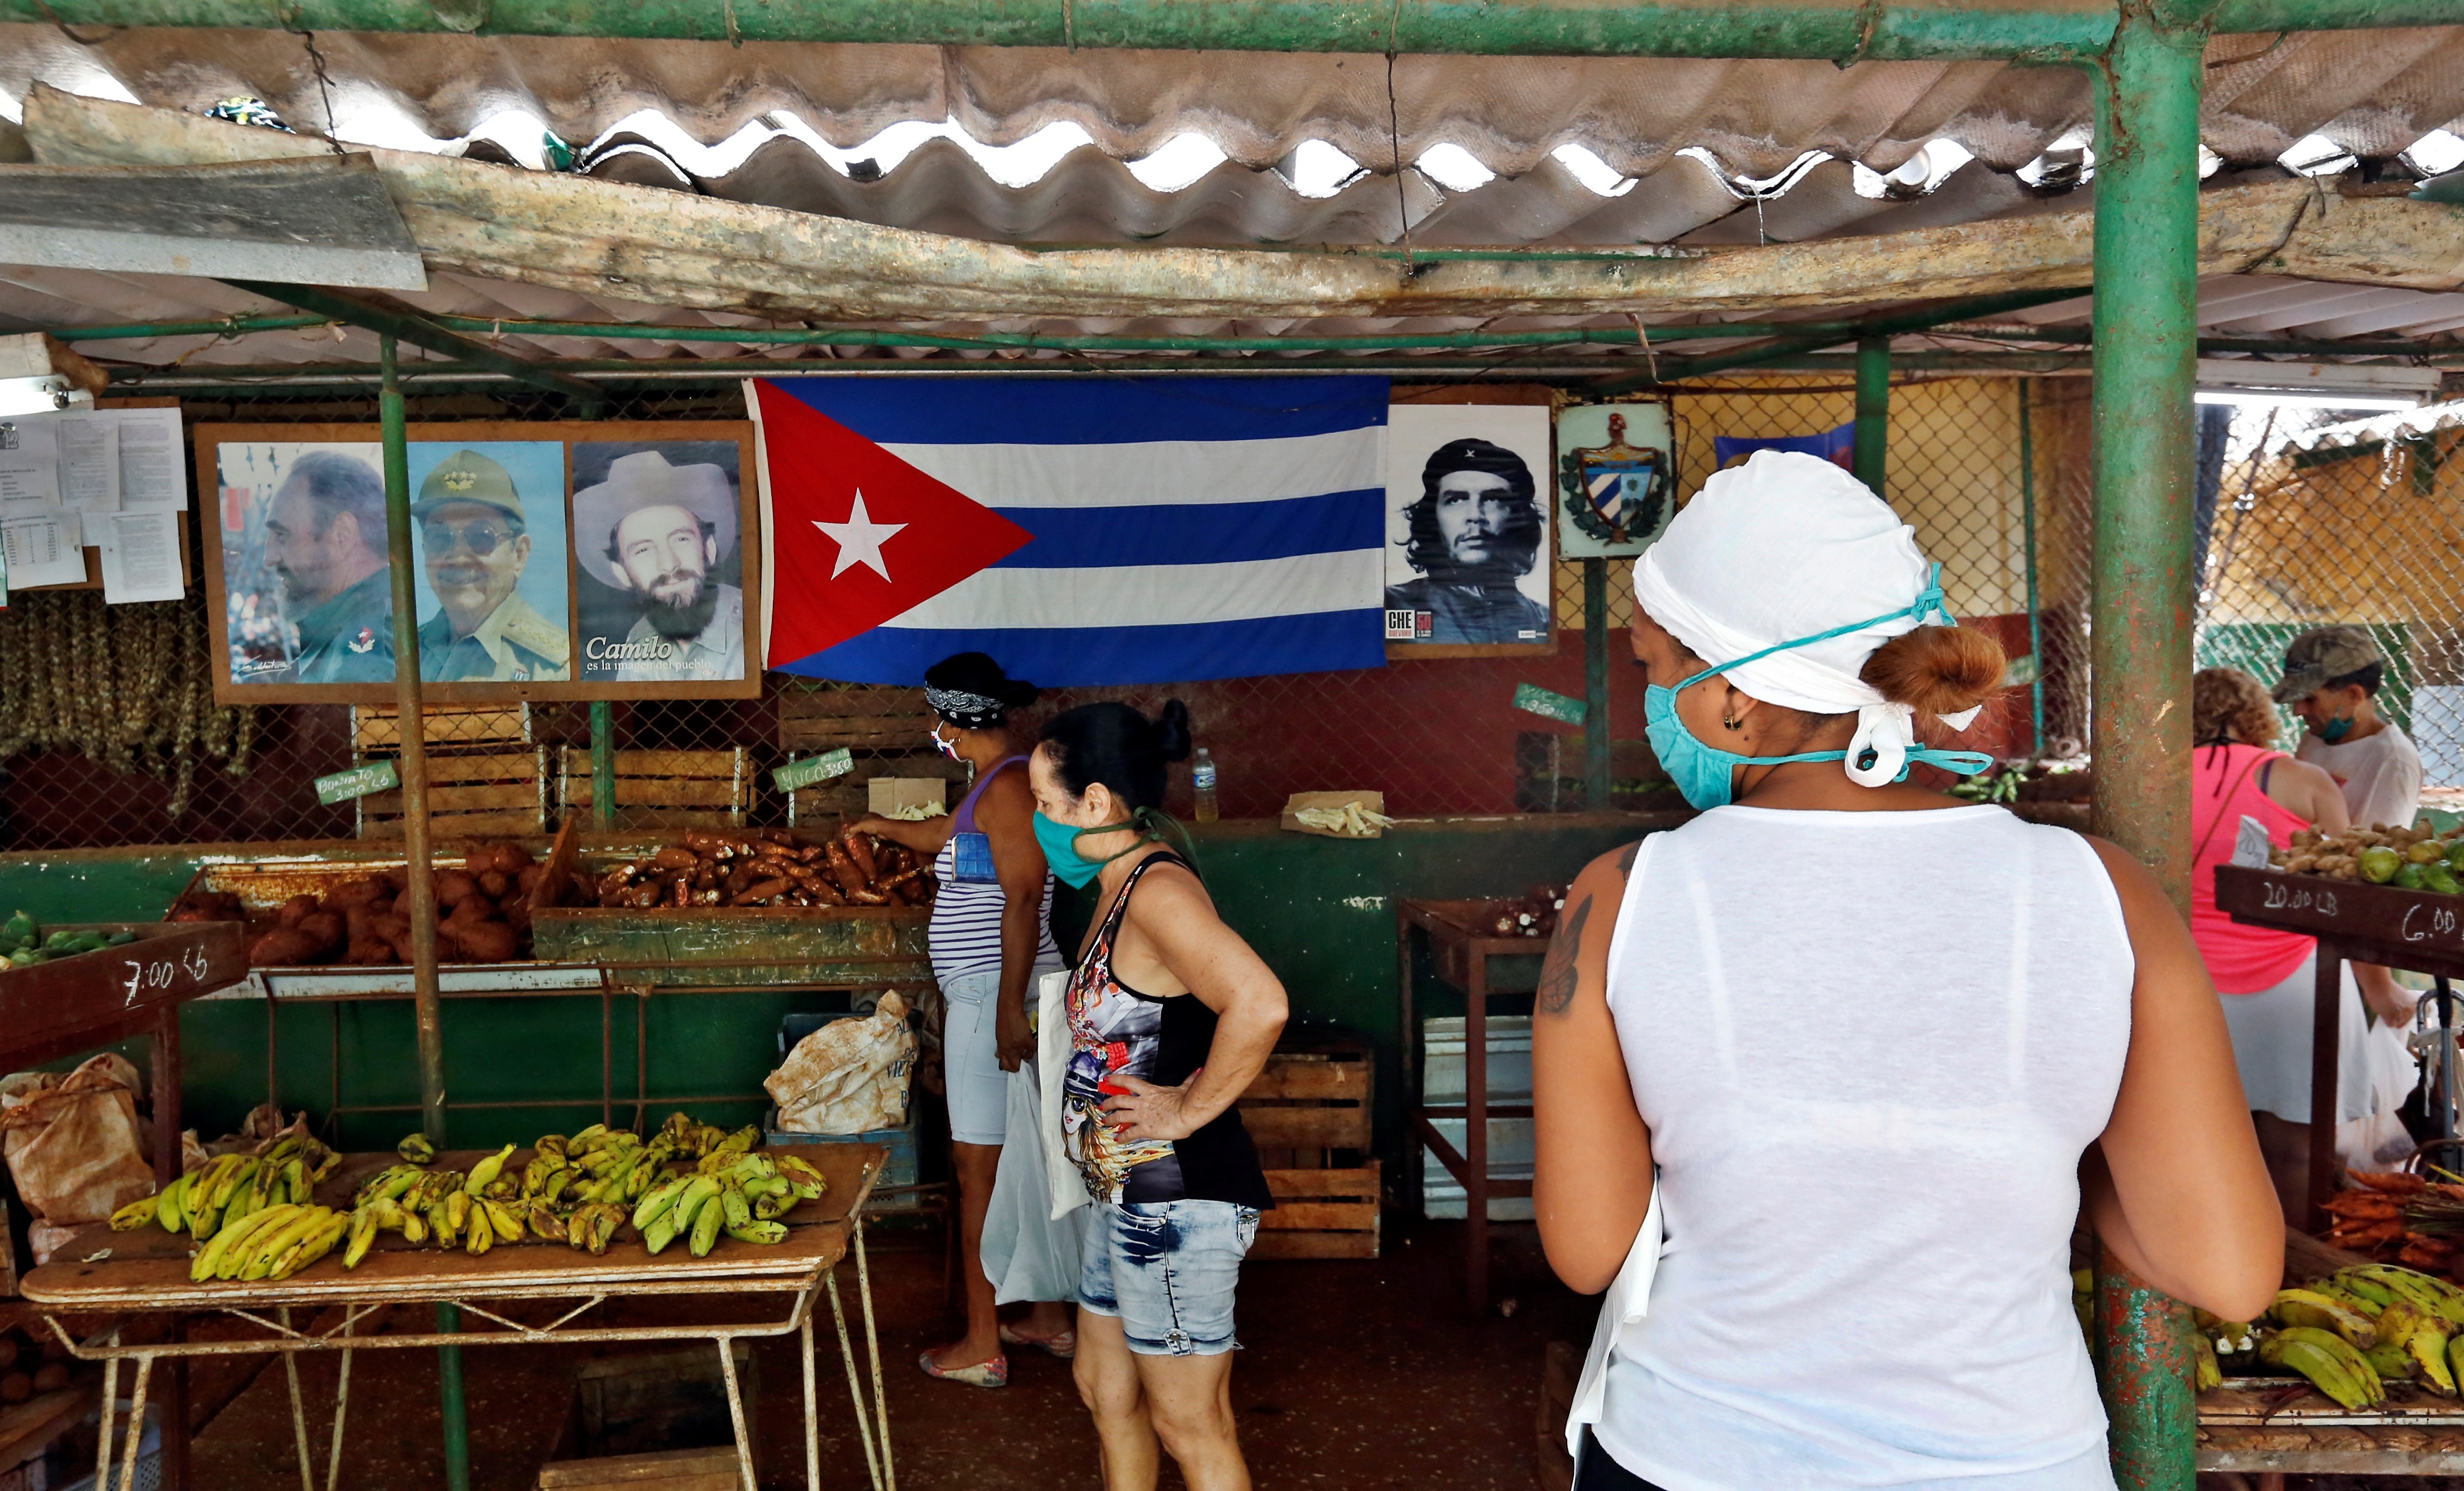 Varias personas que observan productos dentro de un agro mercado, en La Habana (Cuba)
